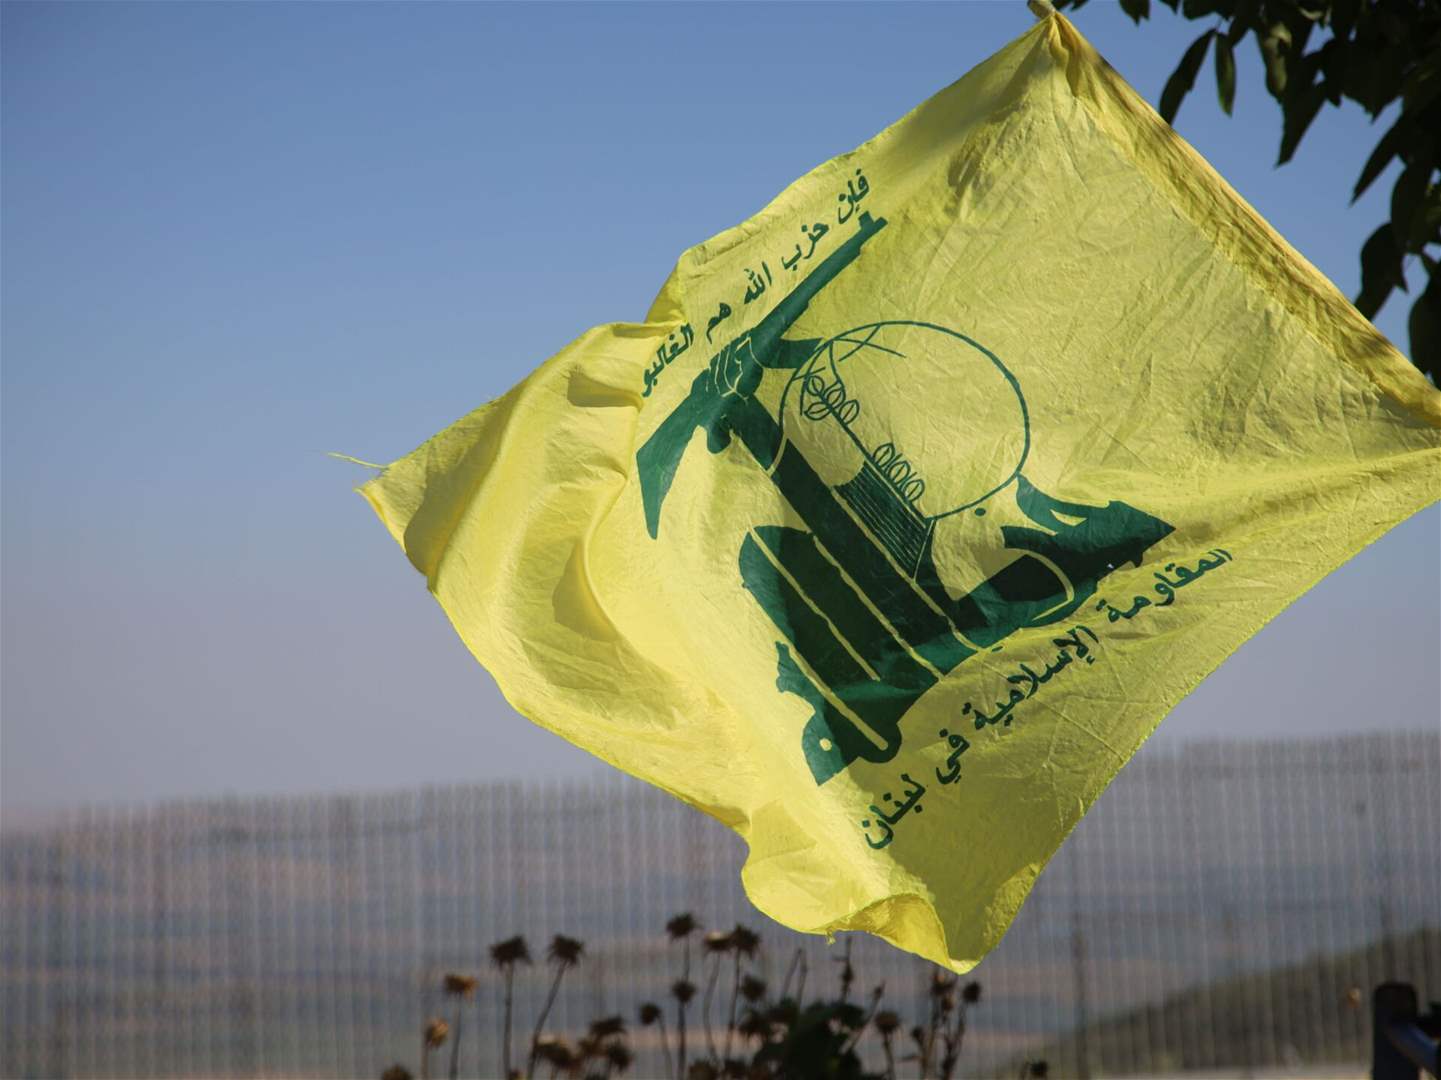 للمرة الثانية اليوم .. حزب الله يستهدف قاعدة ميرون للتحكم والسيطرة والمراقبة الجوية بدفعة من صواريخ ضد الدروع  